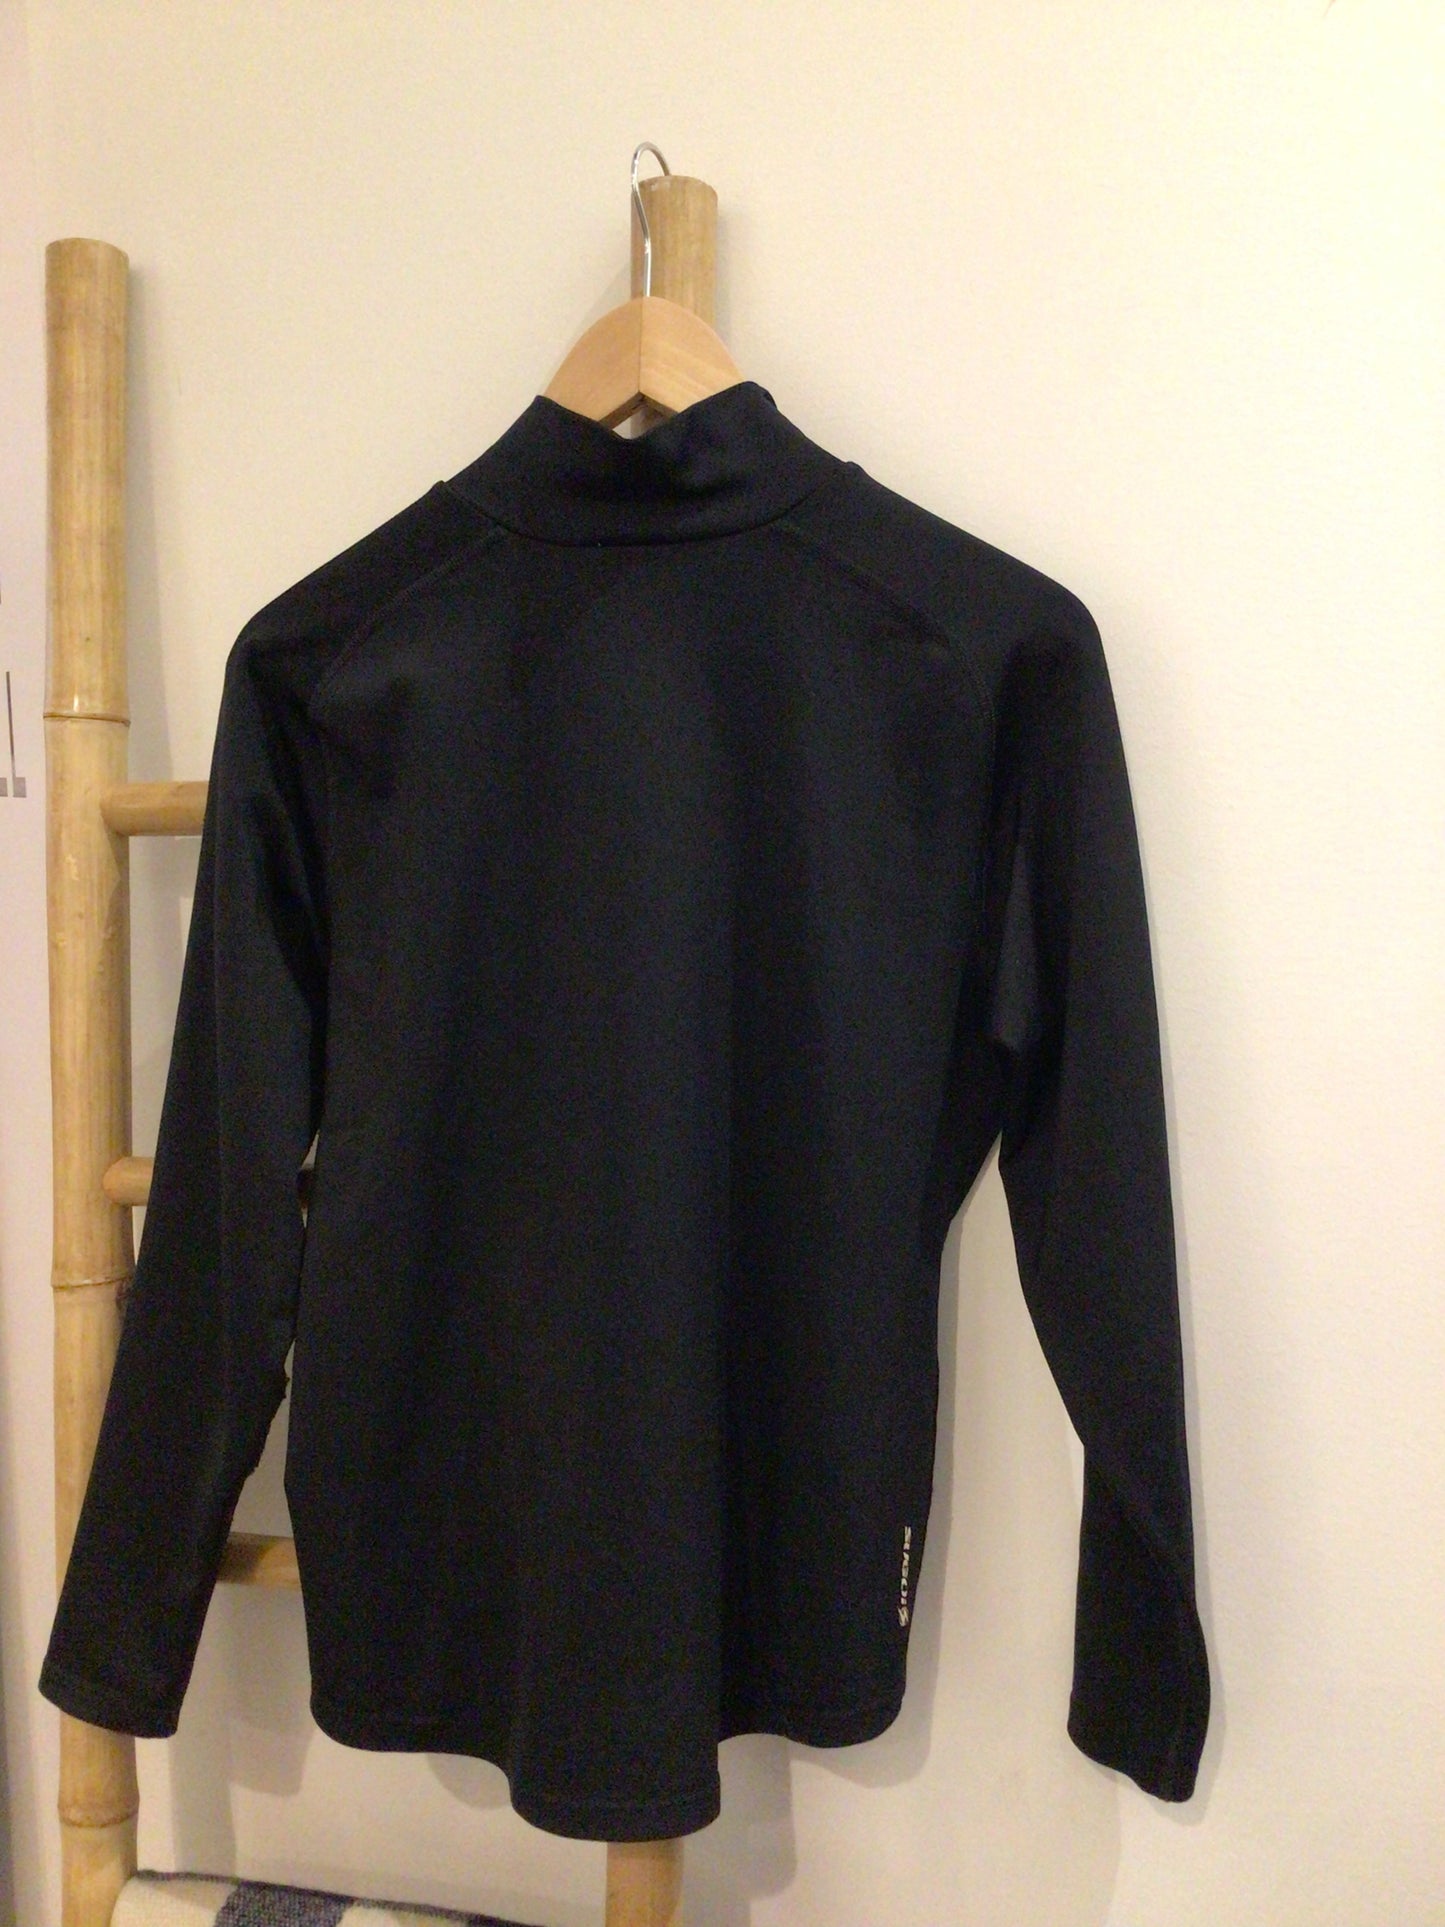 Consignment #8006-55 Sugoi zip pullover.